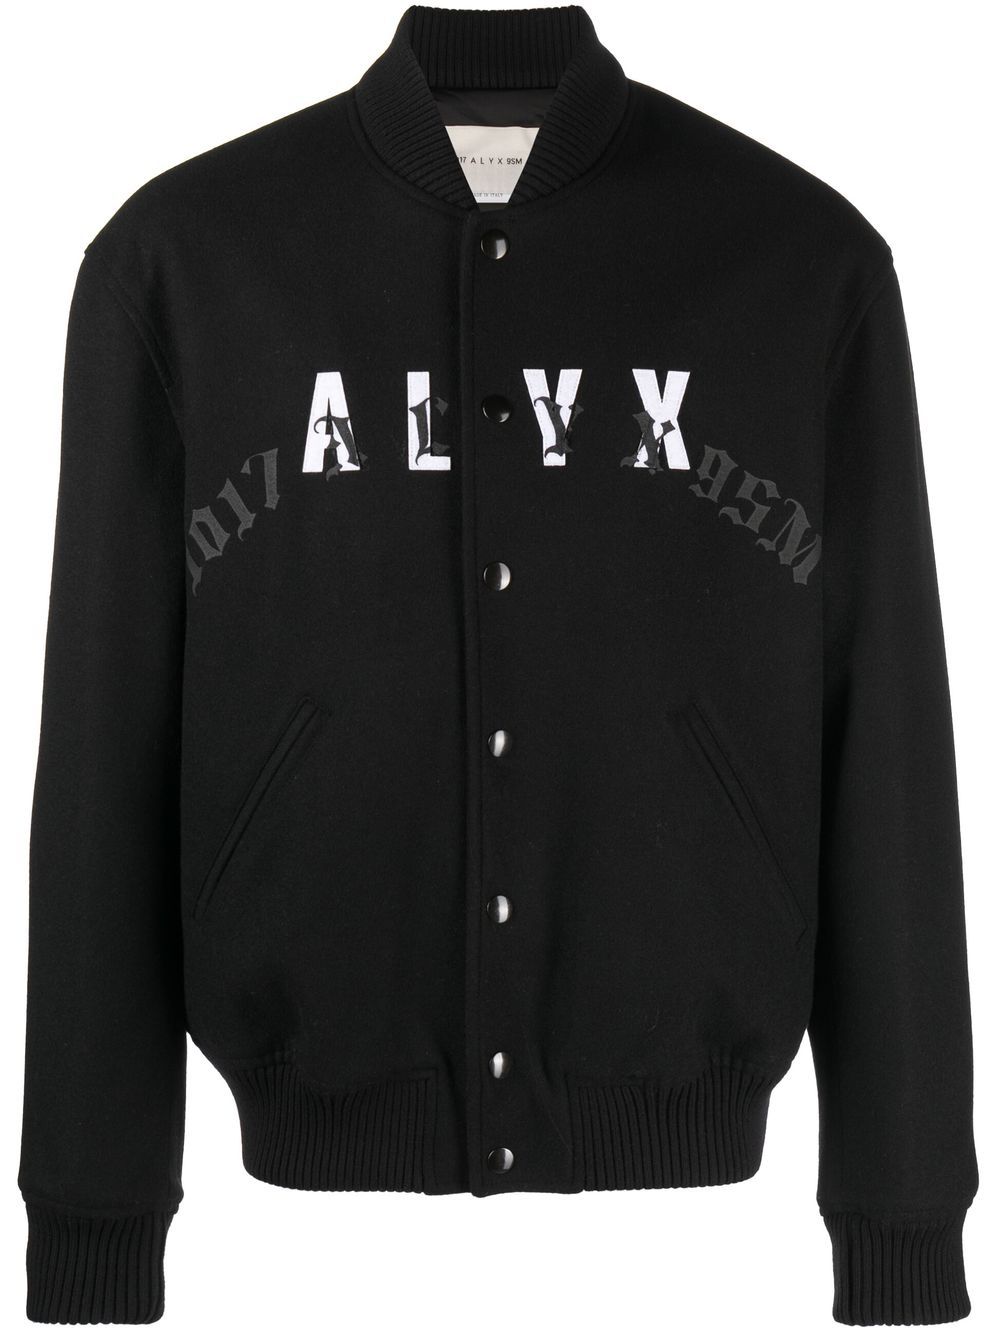 1017 ALYX 9SM leather-logo bomber jacket - Black von 1017 ALYX 9SM